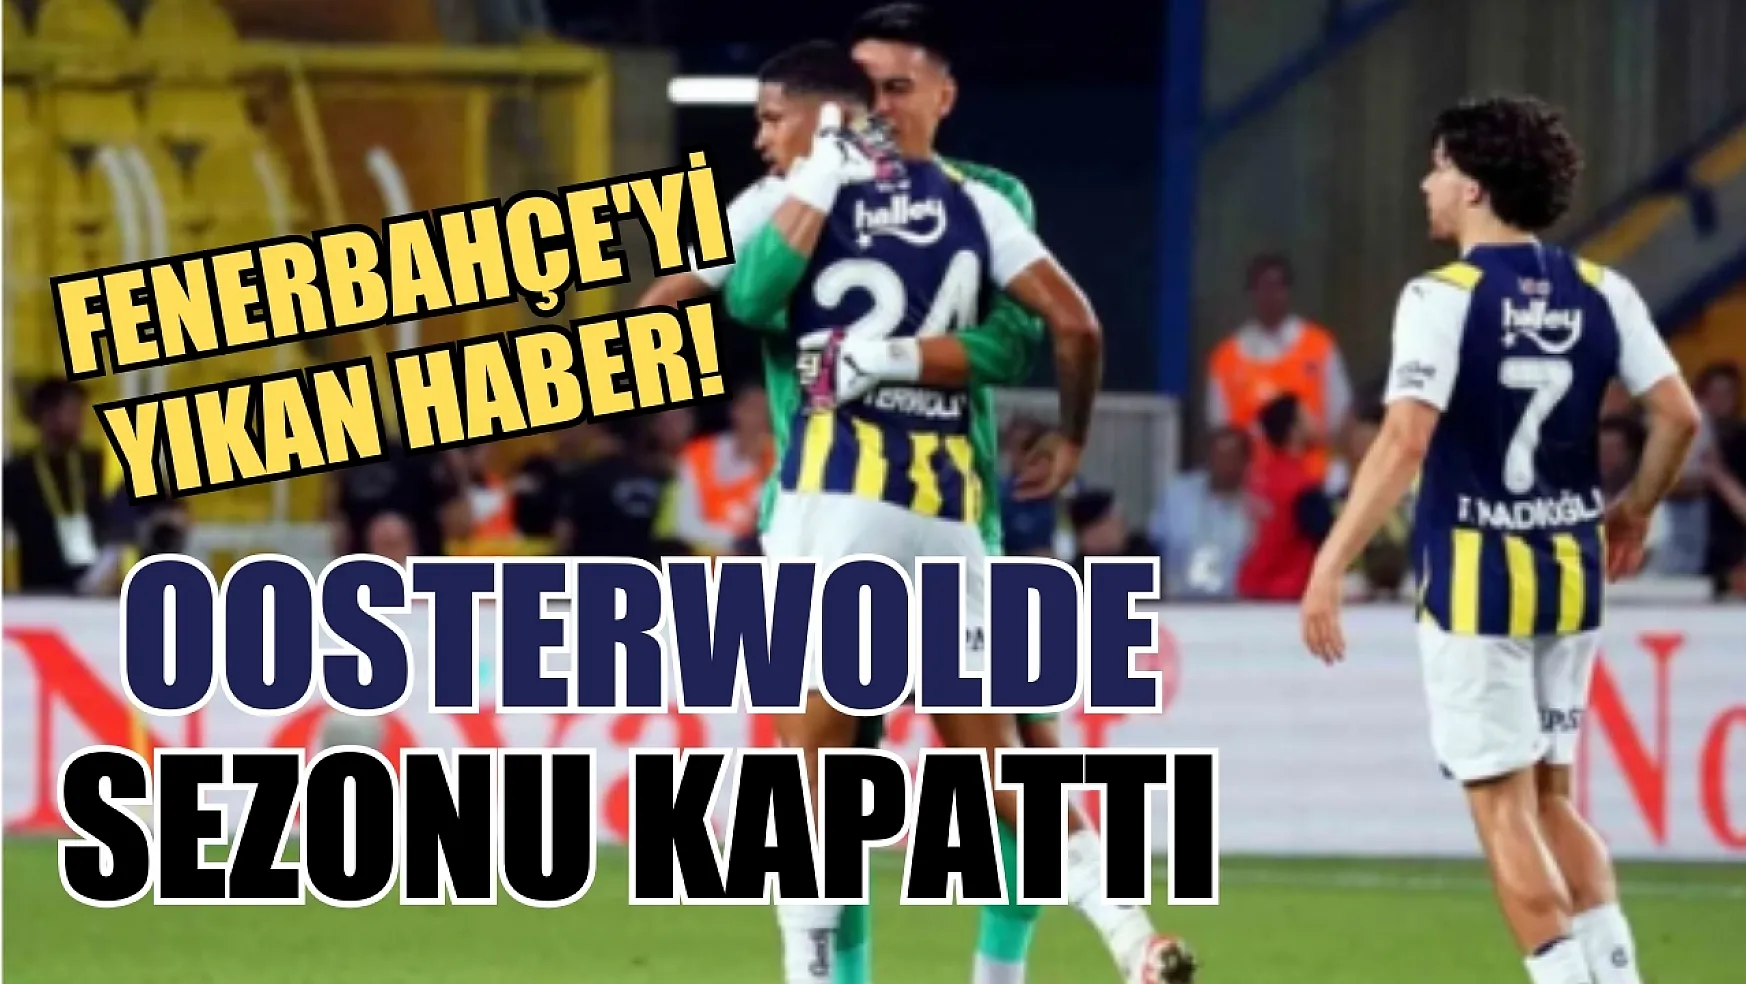 Fenerbahçe'yi yıkan haber! Oosterwolde sezonu kapattı